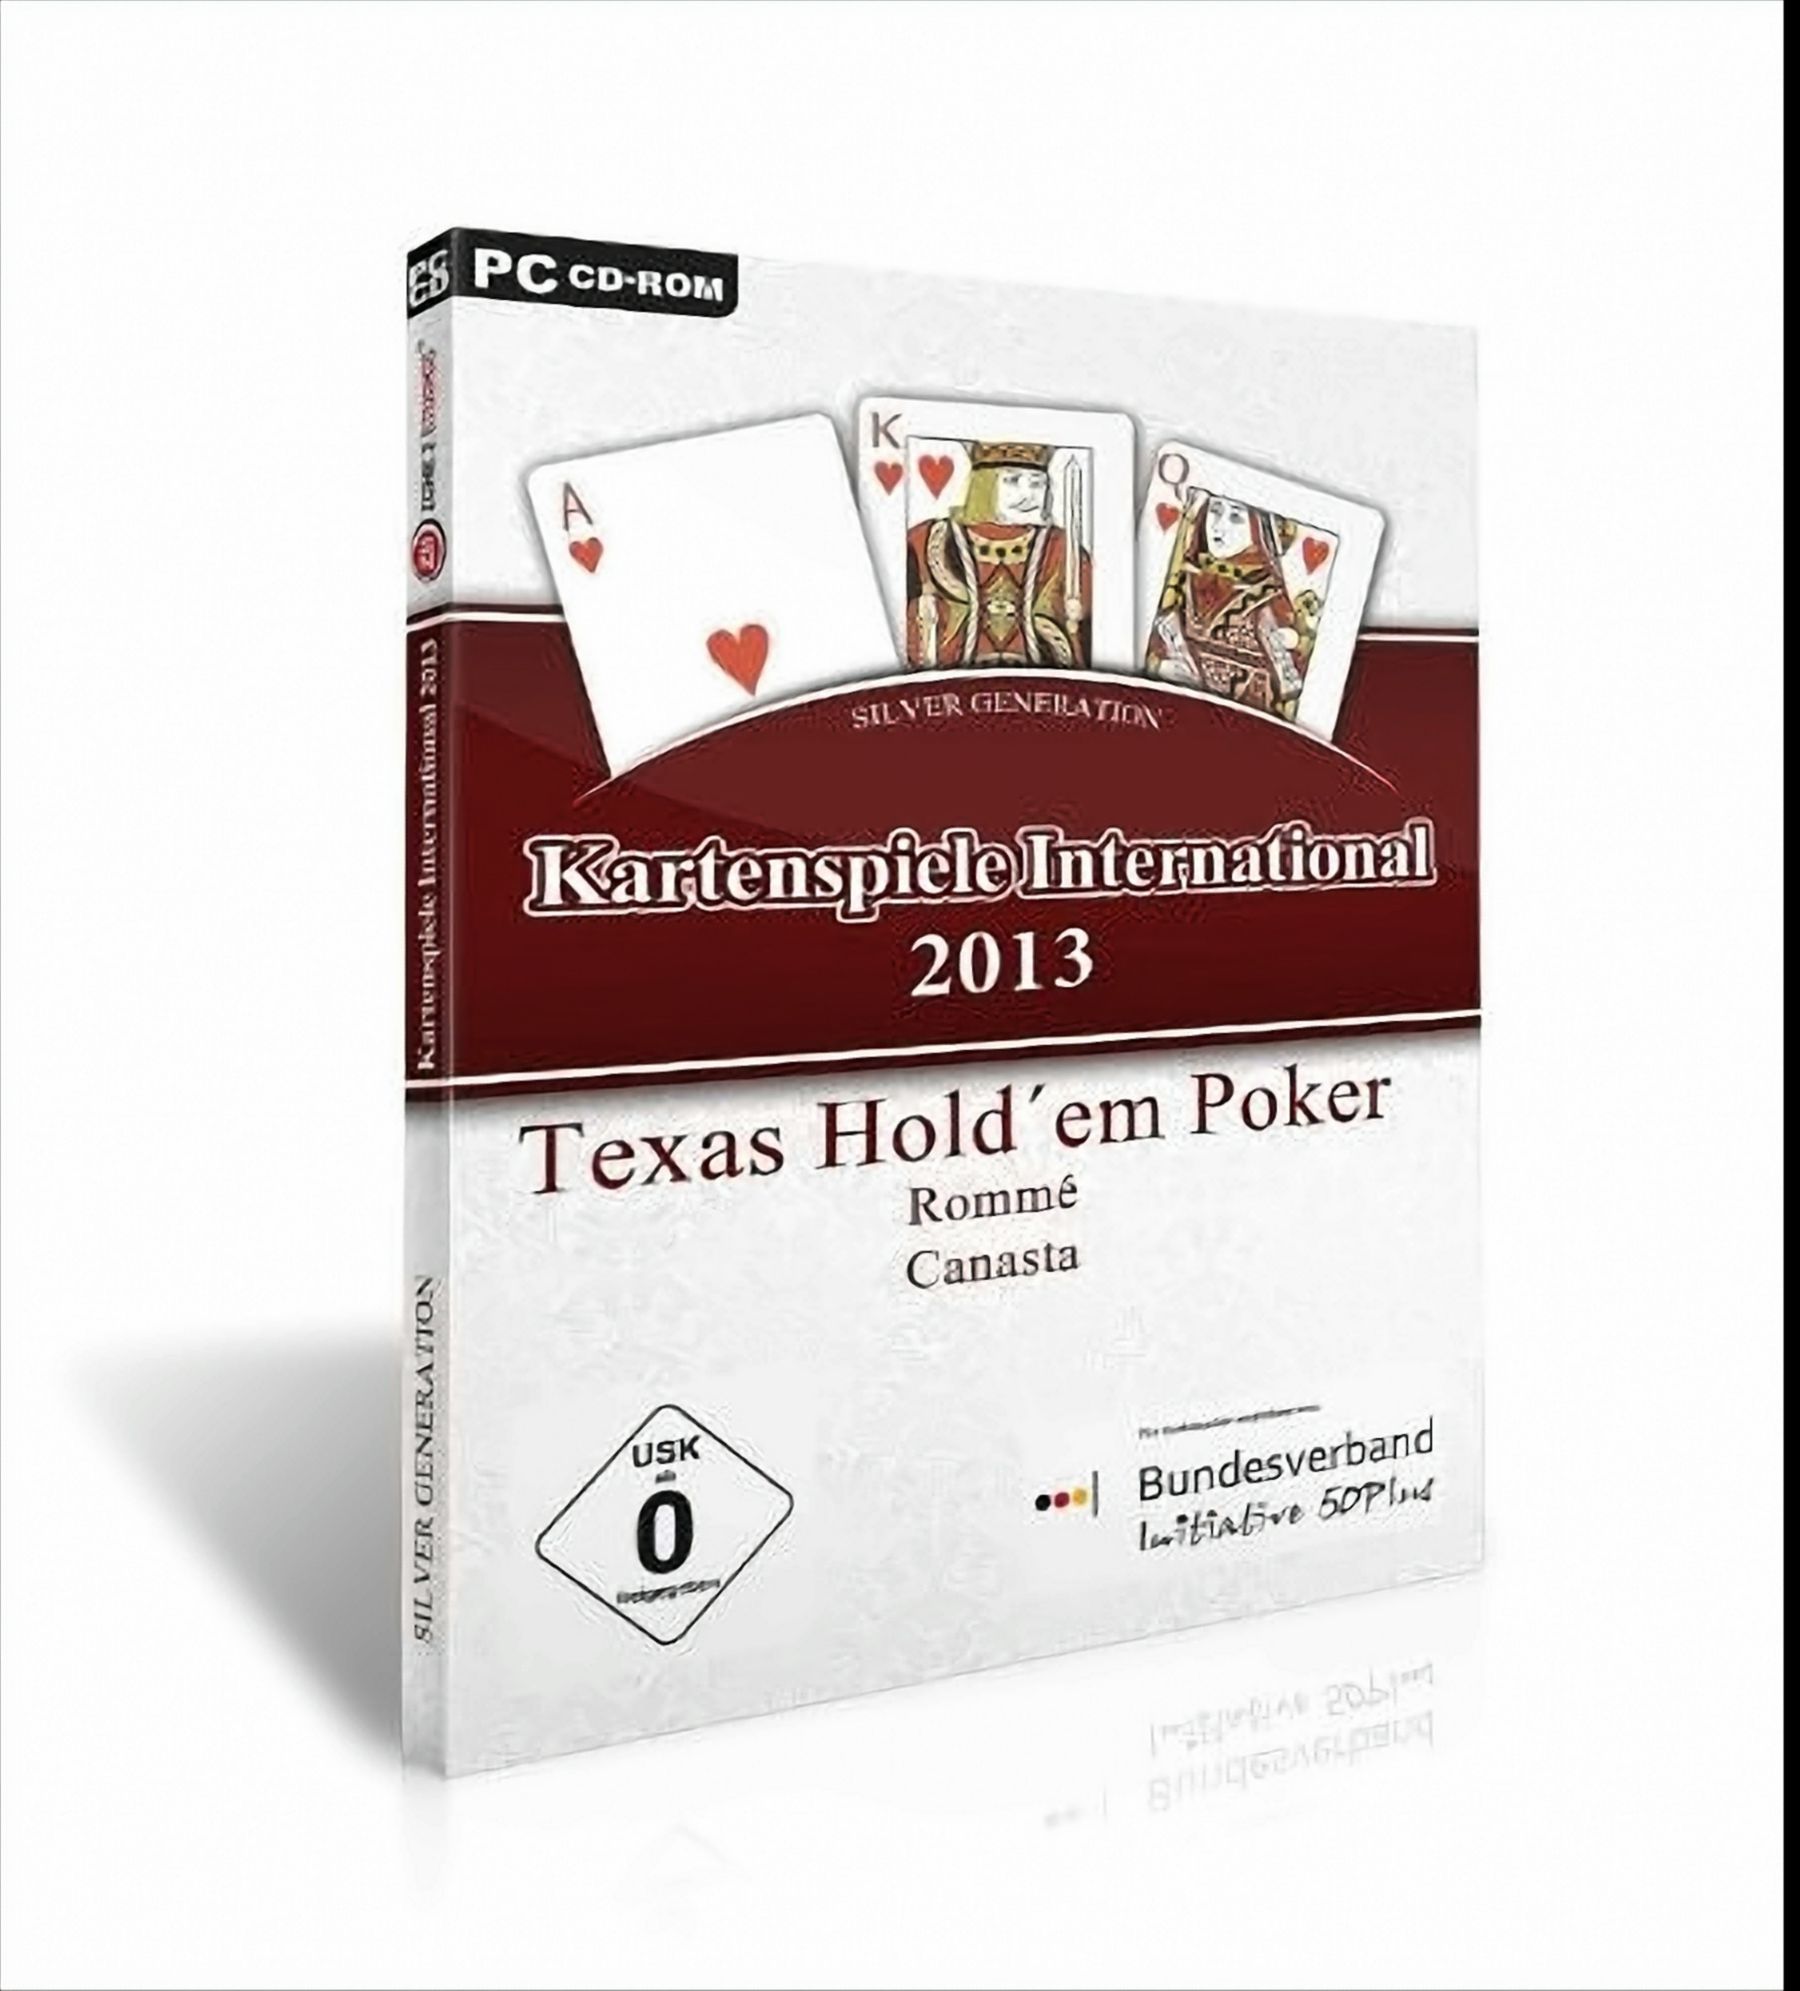 Kartenspiele International 2013 von Koch Media